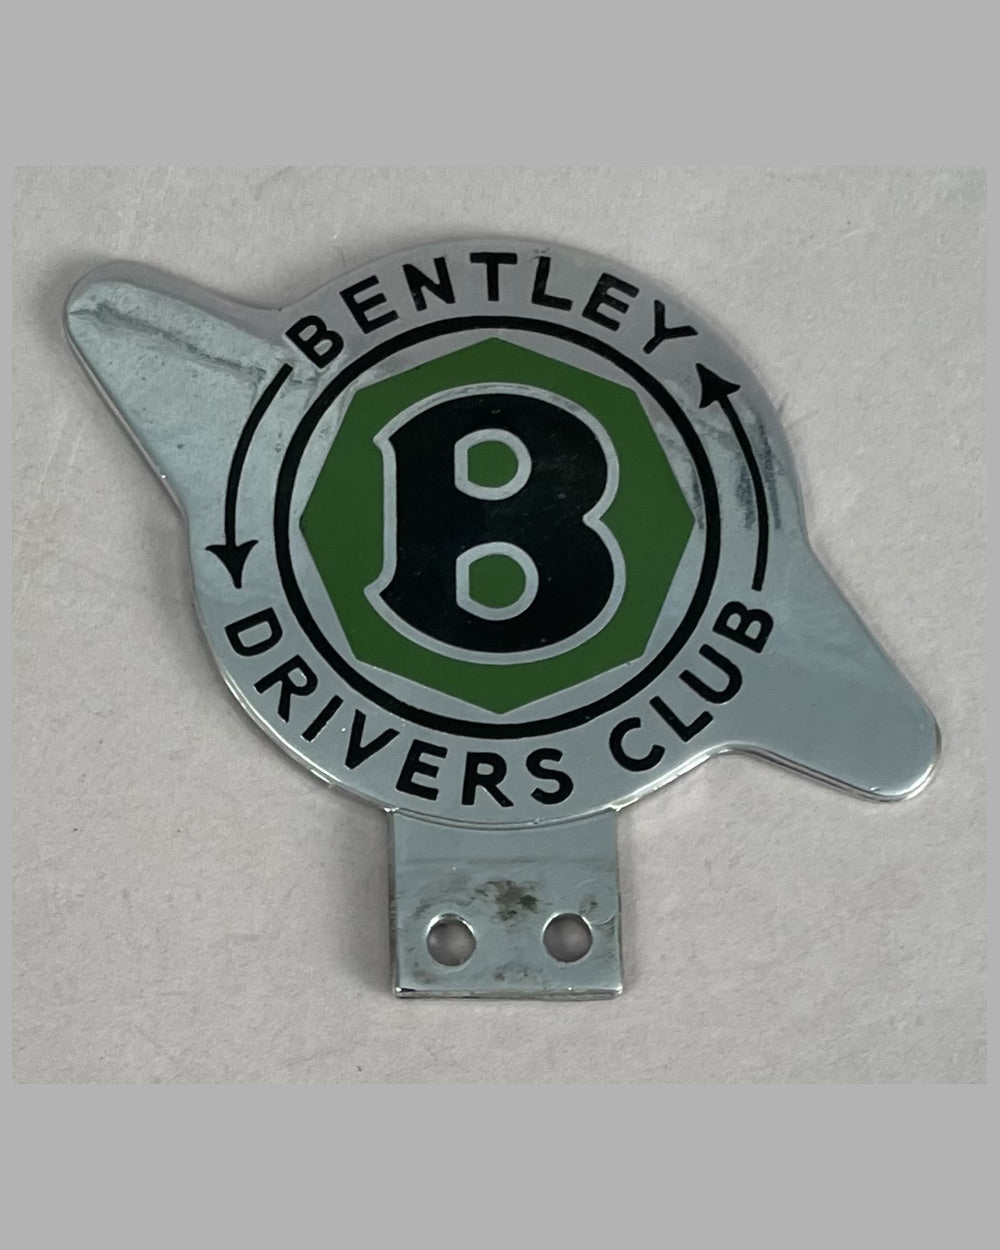 Bentley Drivers Club bumper badge